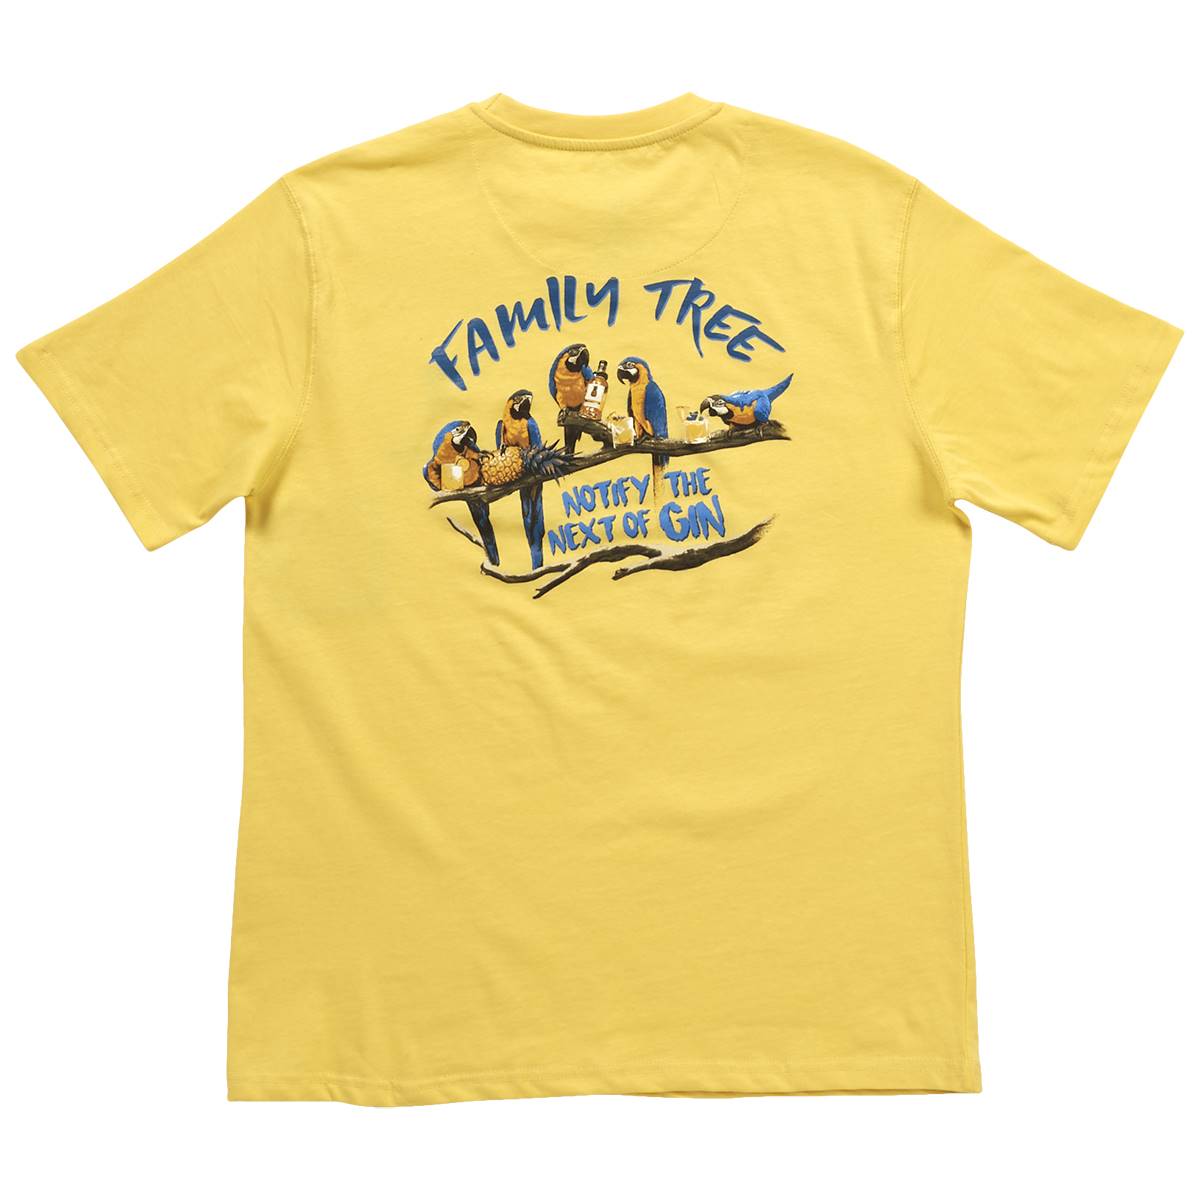 Mens Joe Marlin Family Tree T-Shirt